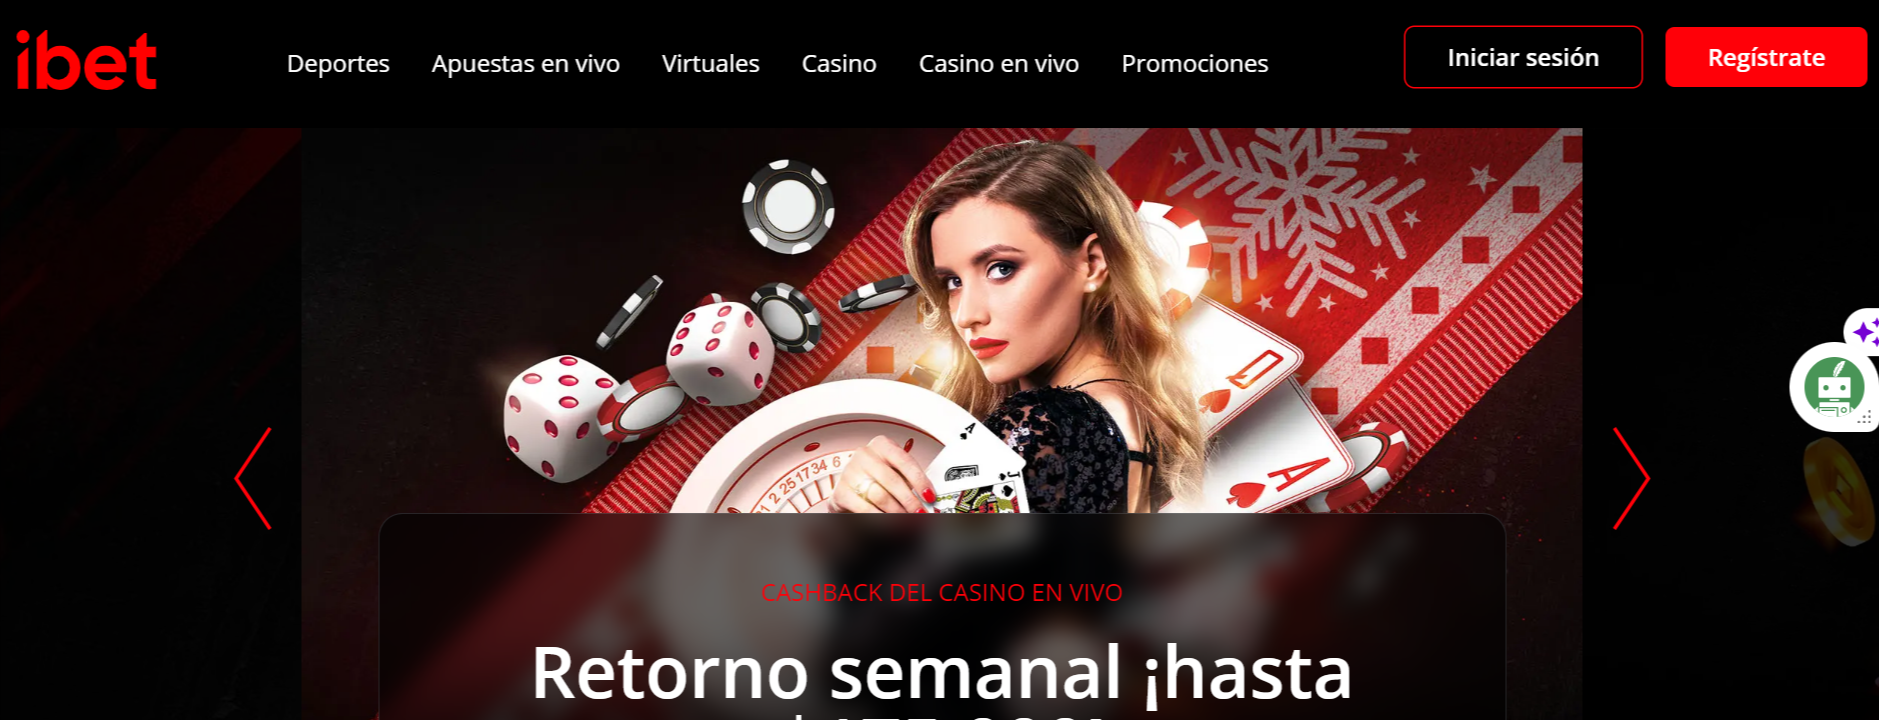 Mobile Casino Revisada: ¿Qué se puede aprender de los errores de los demás?